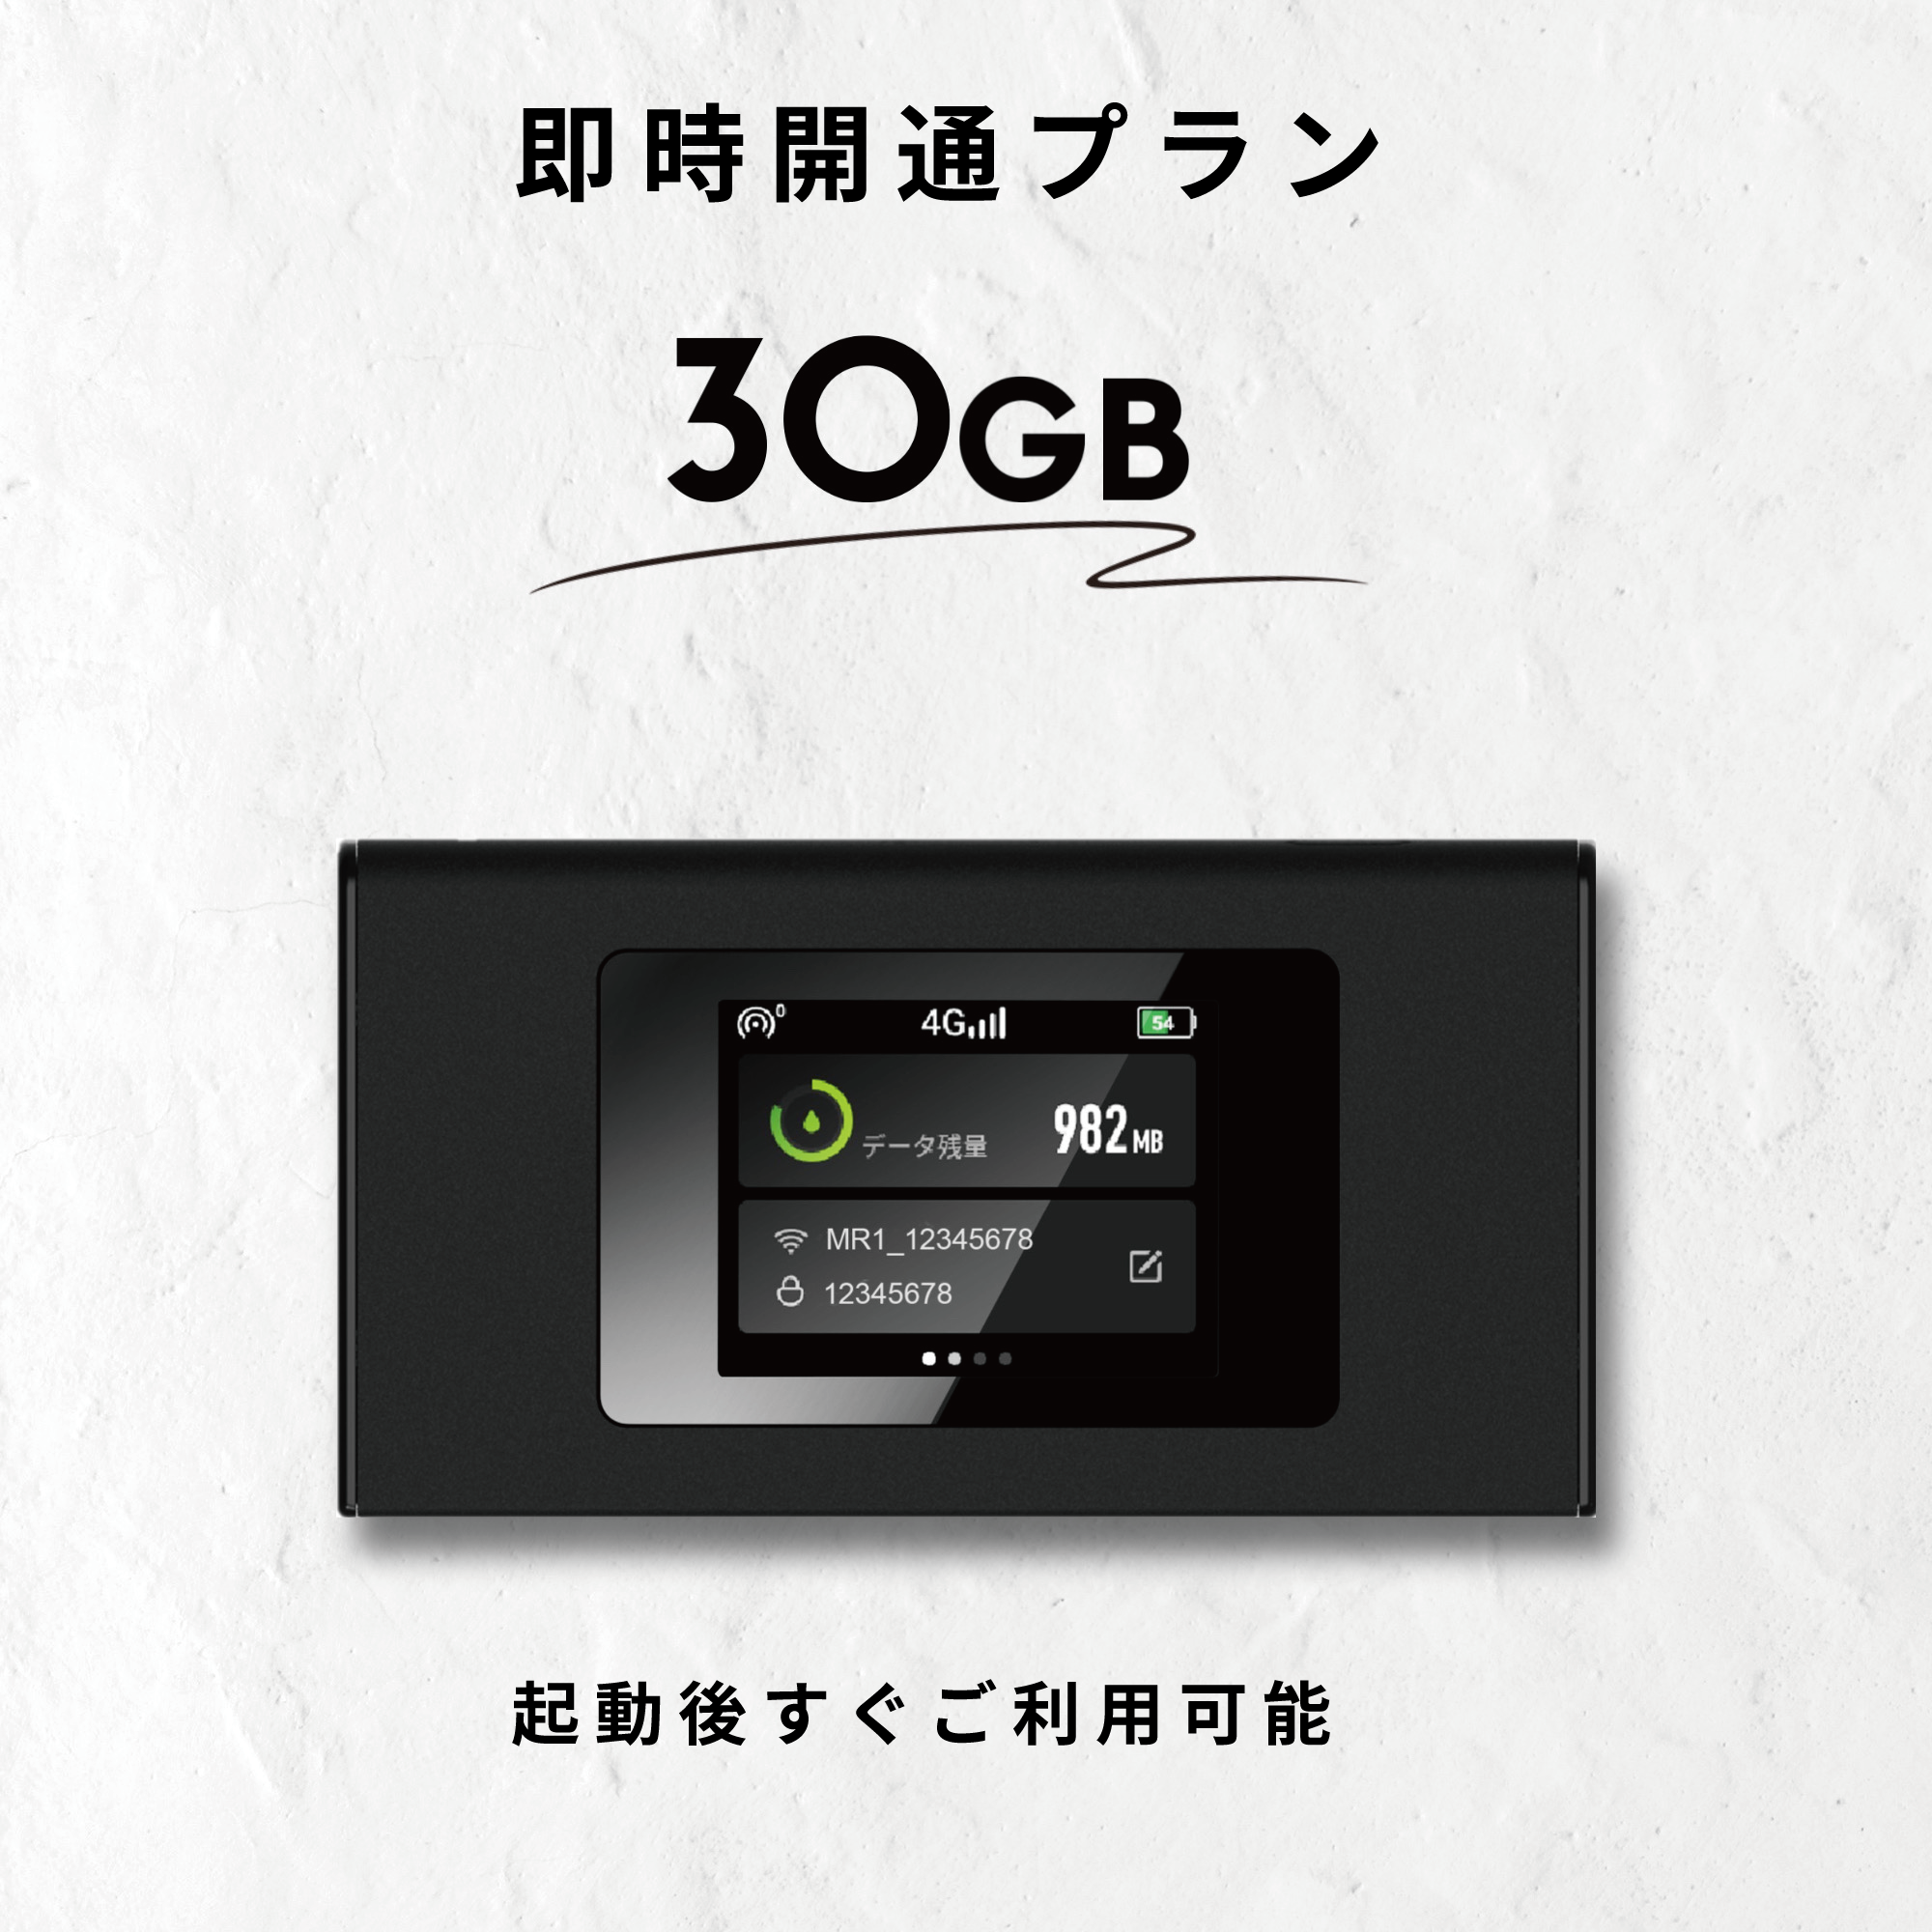 7,040円ギガセット　モバイルルーター【契約・月額費用不要】